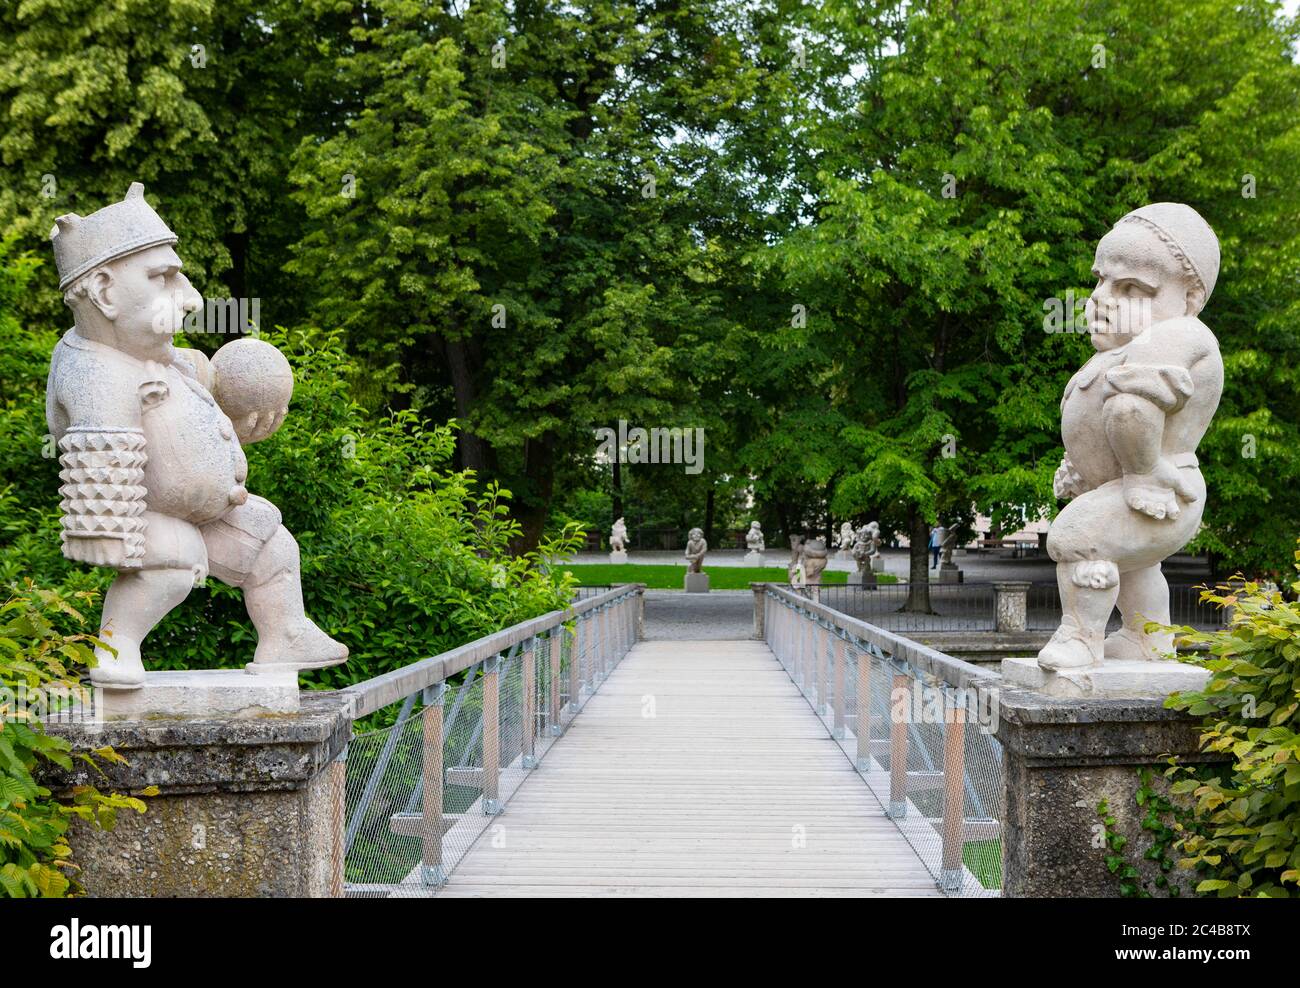 Dwarf with ball and dwarf with spiked sleeves, dwarf garden, dwarf garden in the Mirabell Garden, Salzburg, Austria Stock Photo